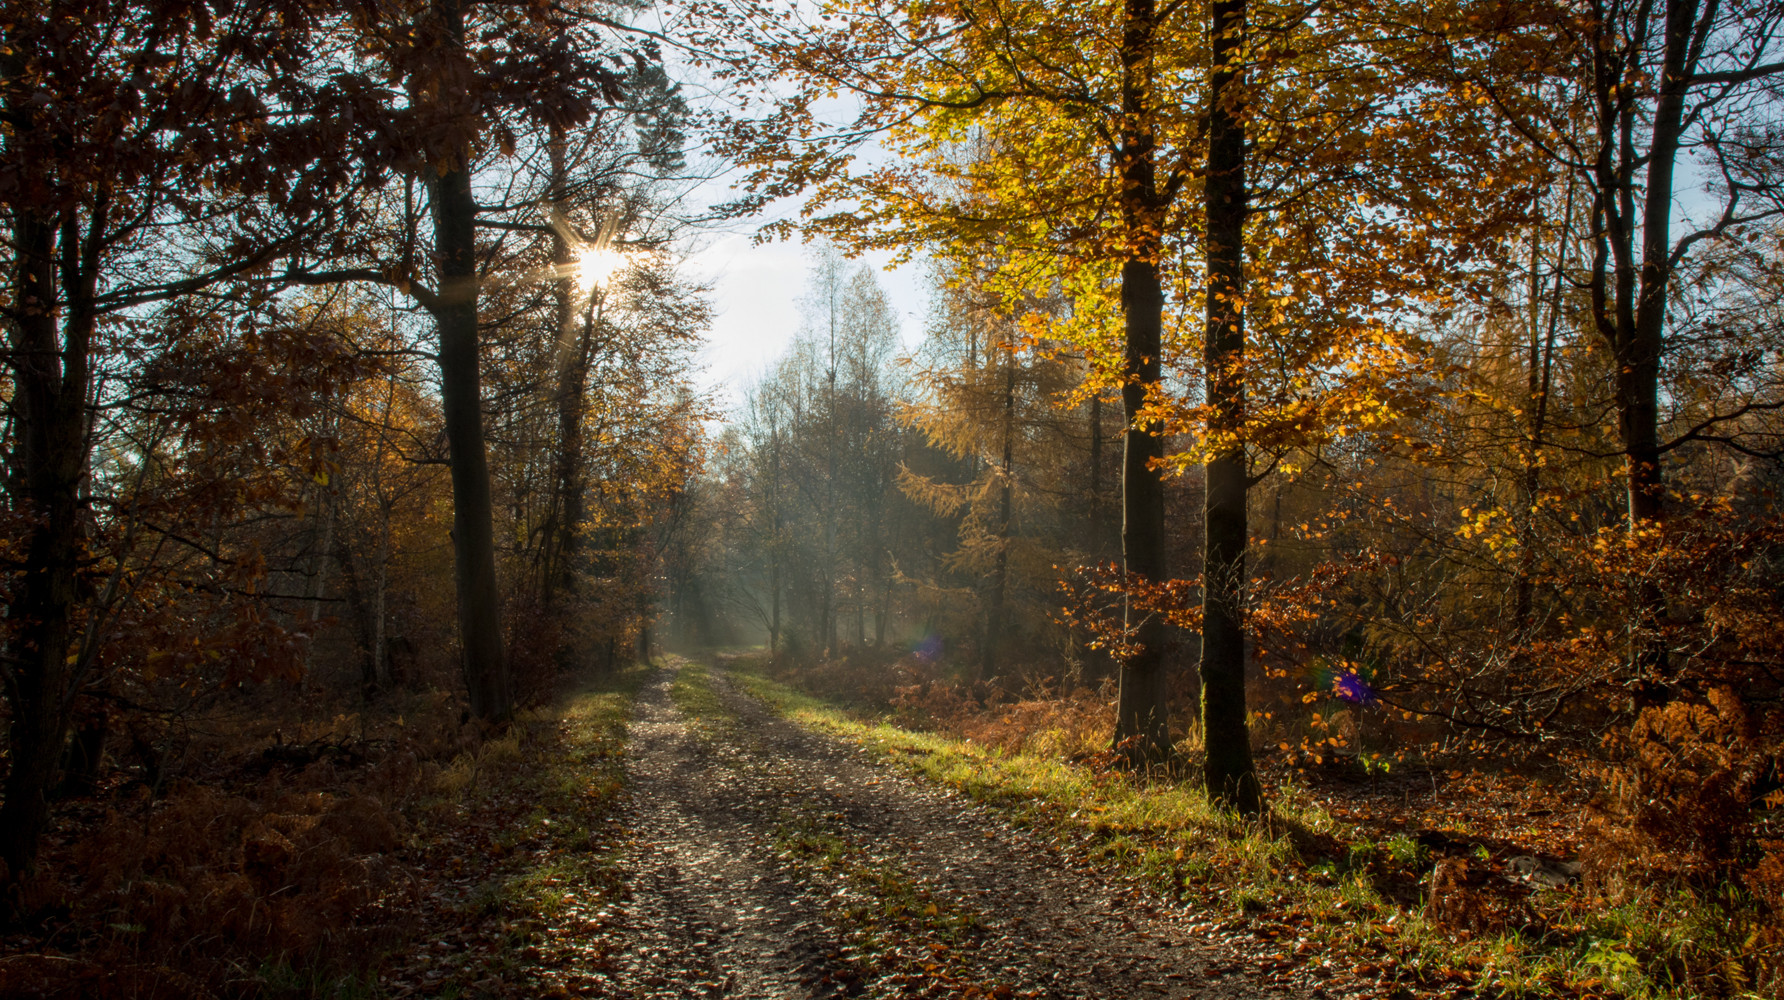 Sonnenstrahlen im Herbstwald 